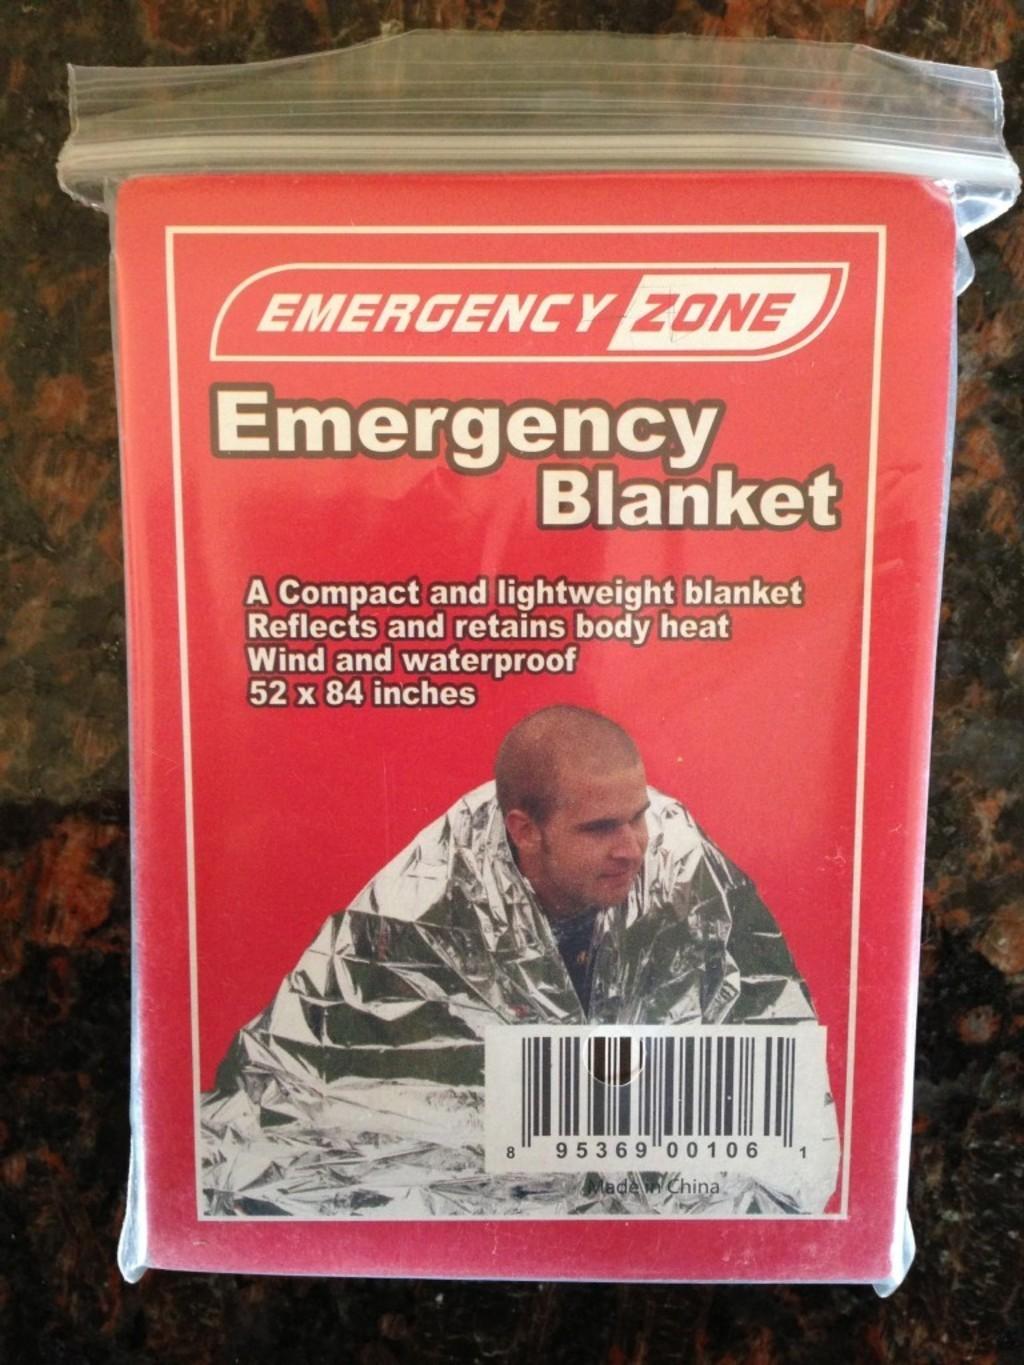 Emergency Zone Emergency Blanket